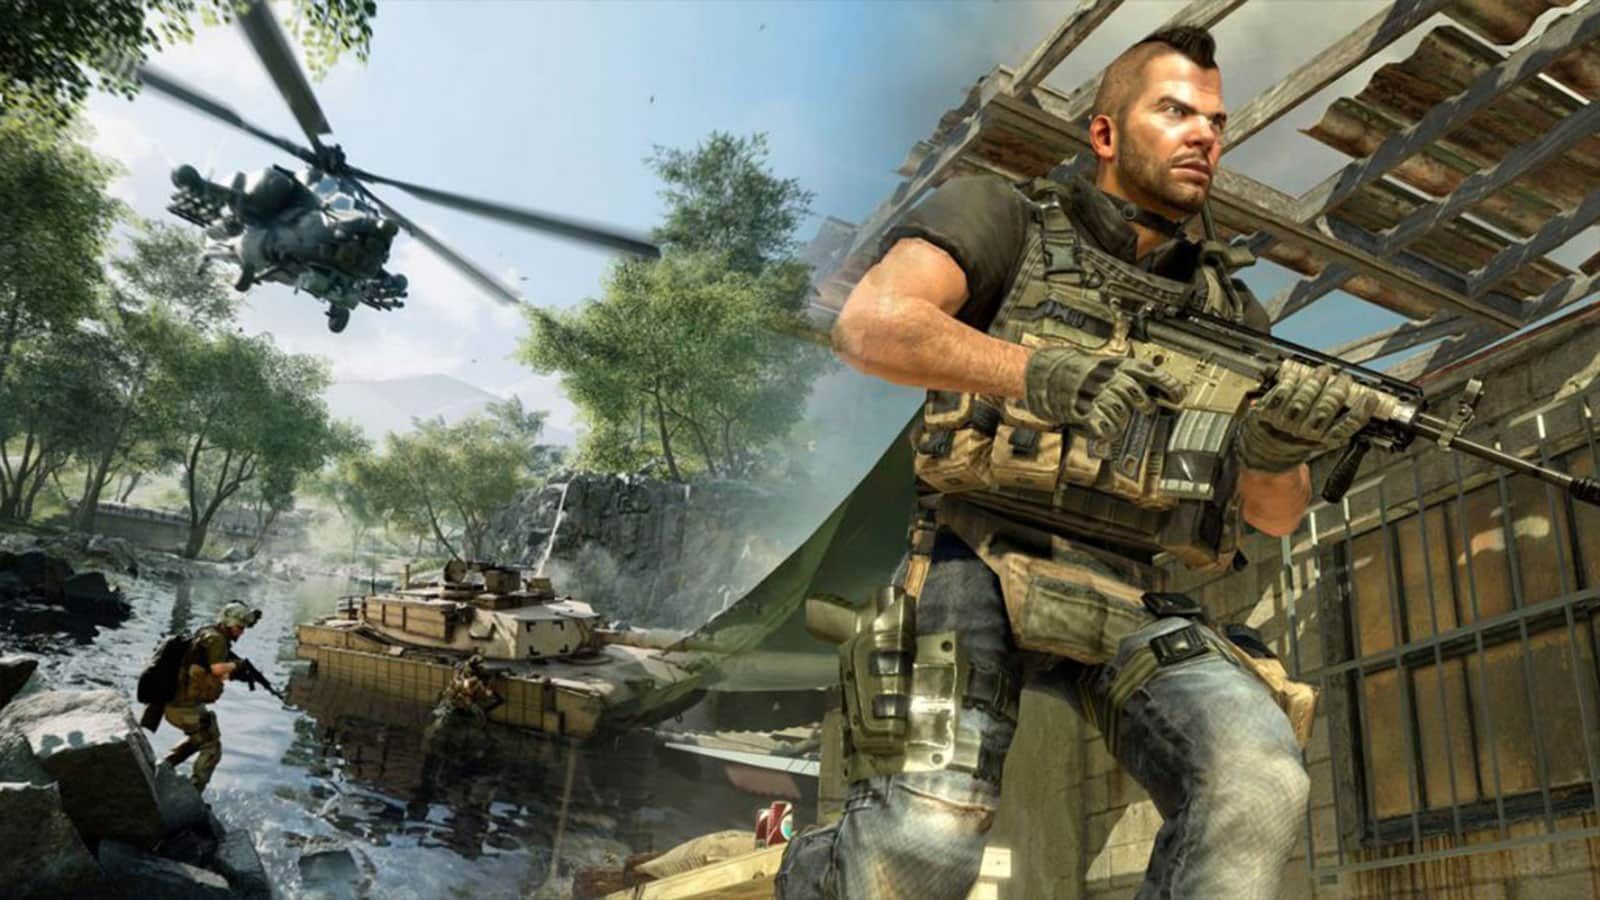 Les joueurs CoD veulent un mode de jeu inspiré de Battlefield Portal